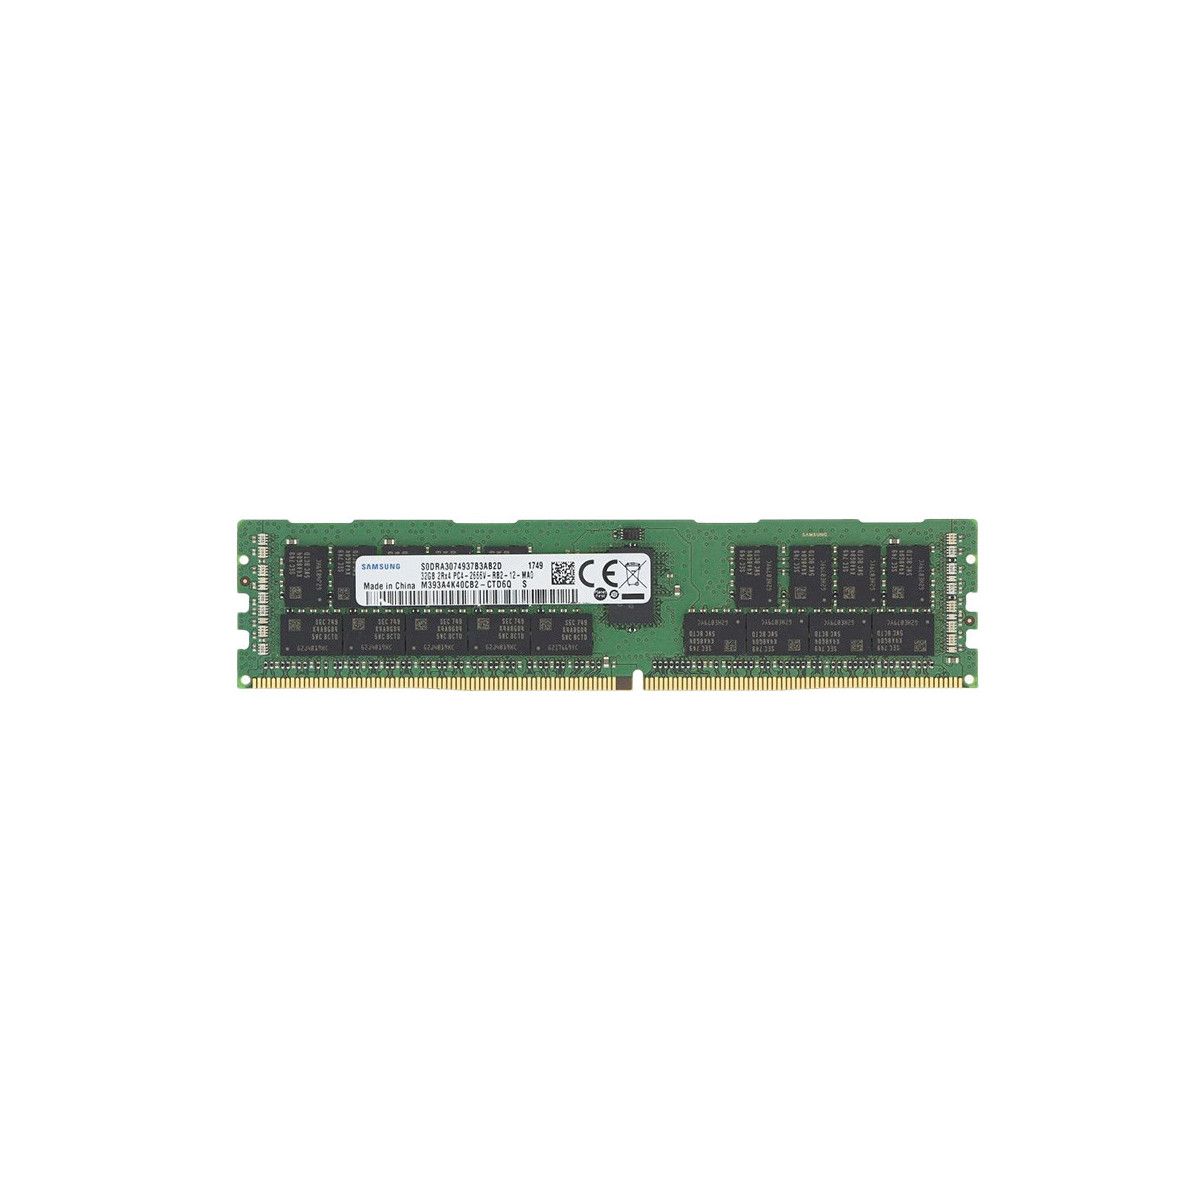 MEM-DR432L-SL04-ER26-MS - Memstar 1x 32GB DDR4-2666 RDIMM PC4-21300V-R